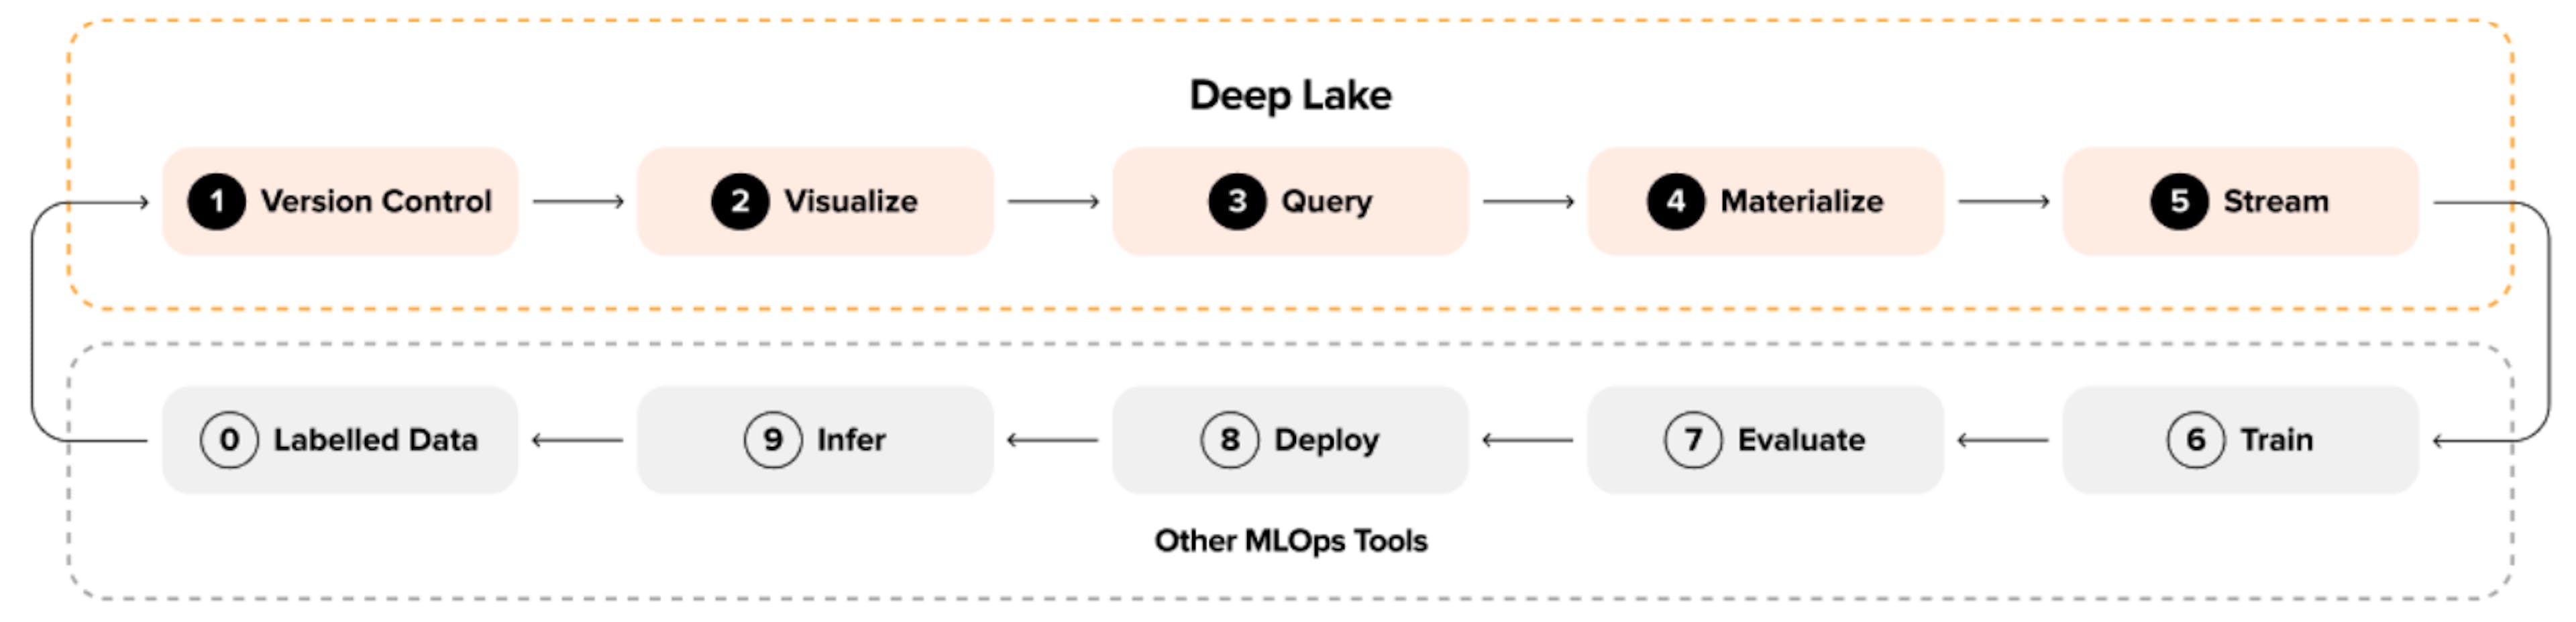 Abbildung 2: Machine Learning-Schleife mit Deep Lake